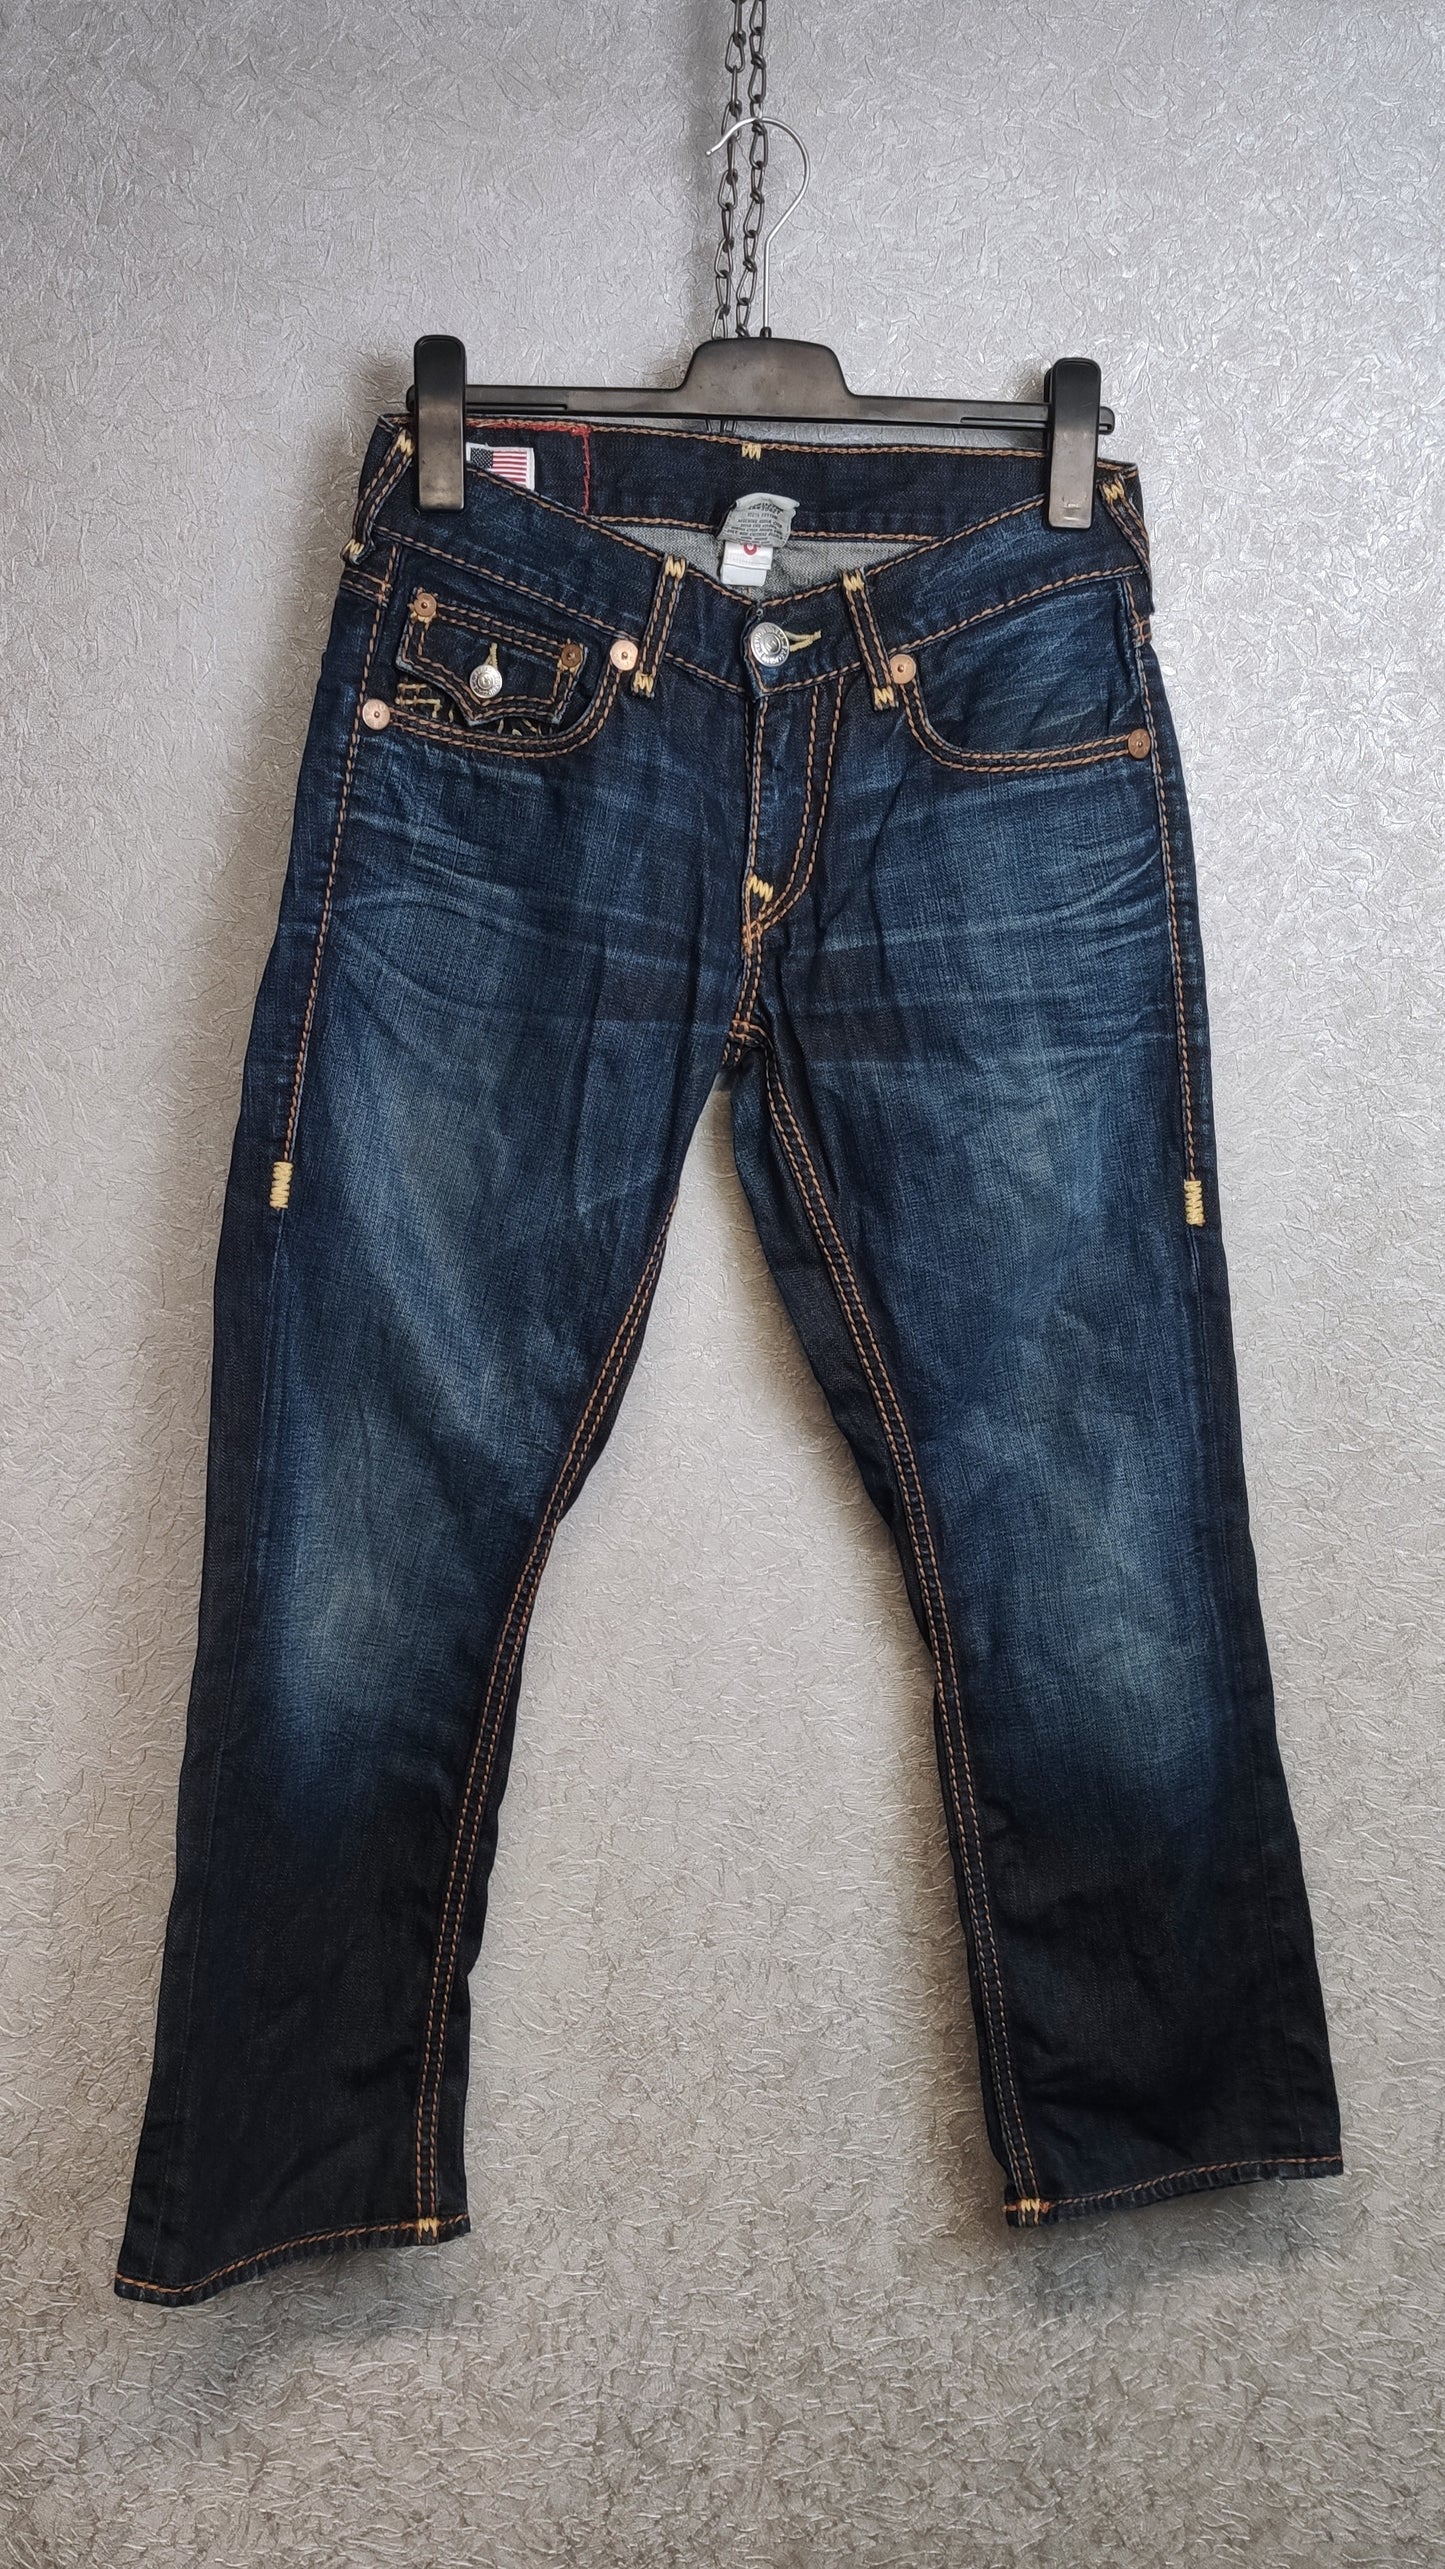 Vintage True Religion Jeans Size 29